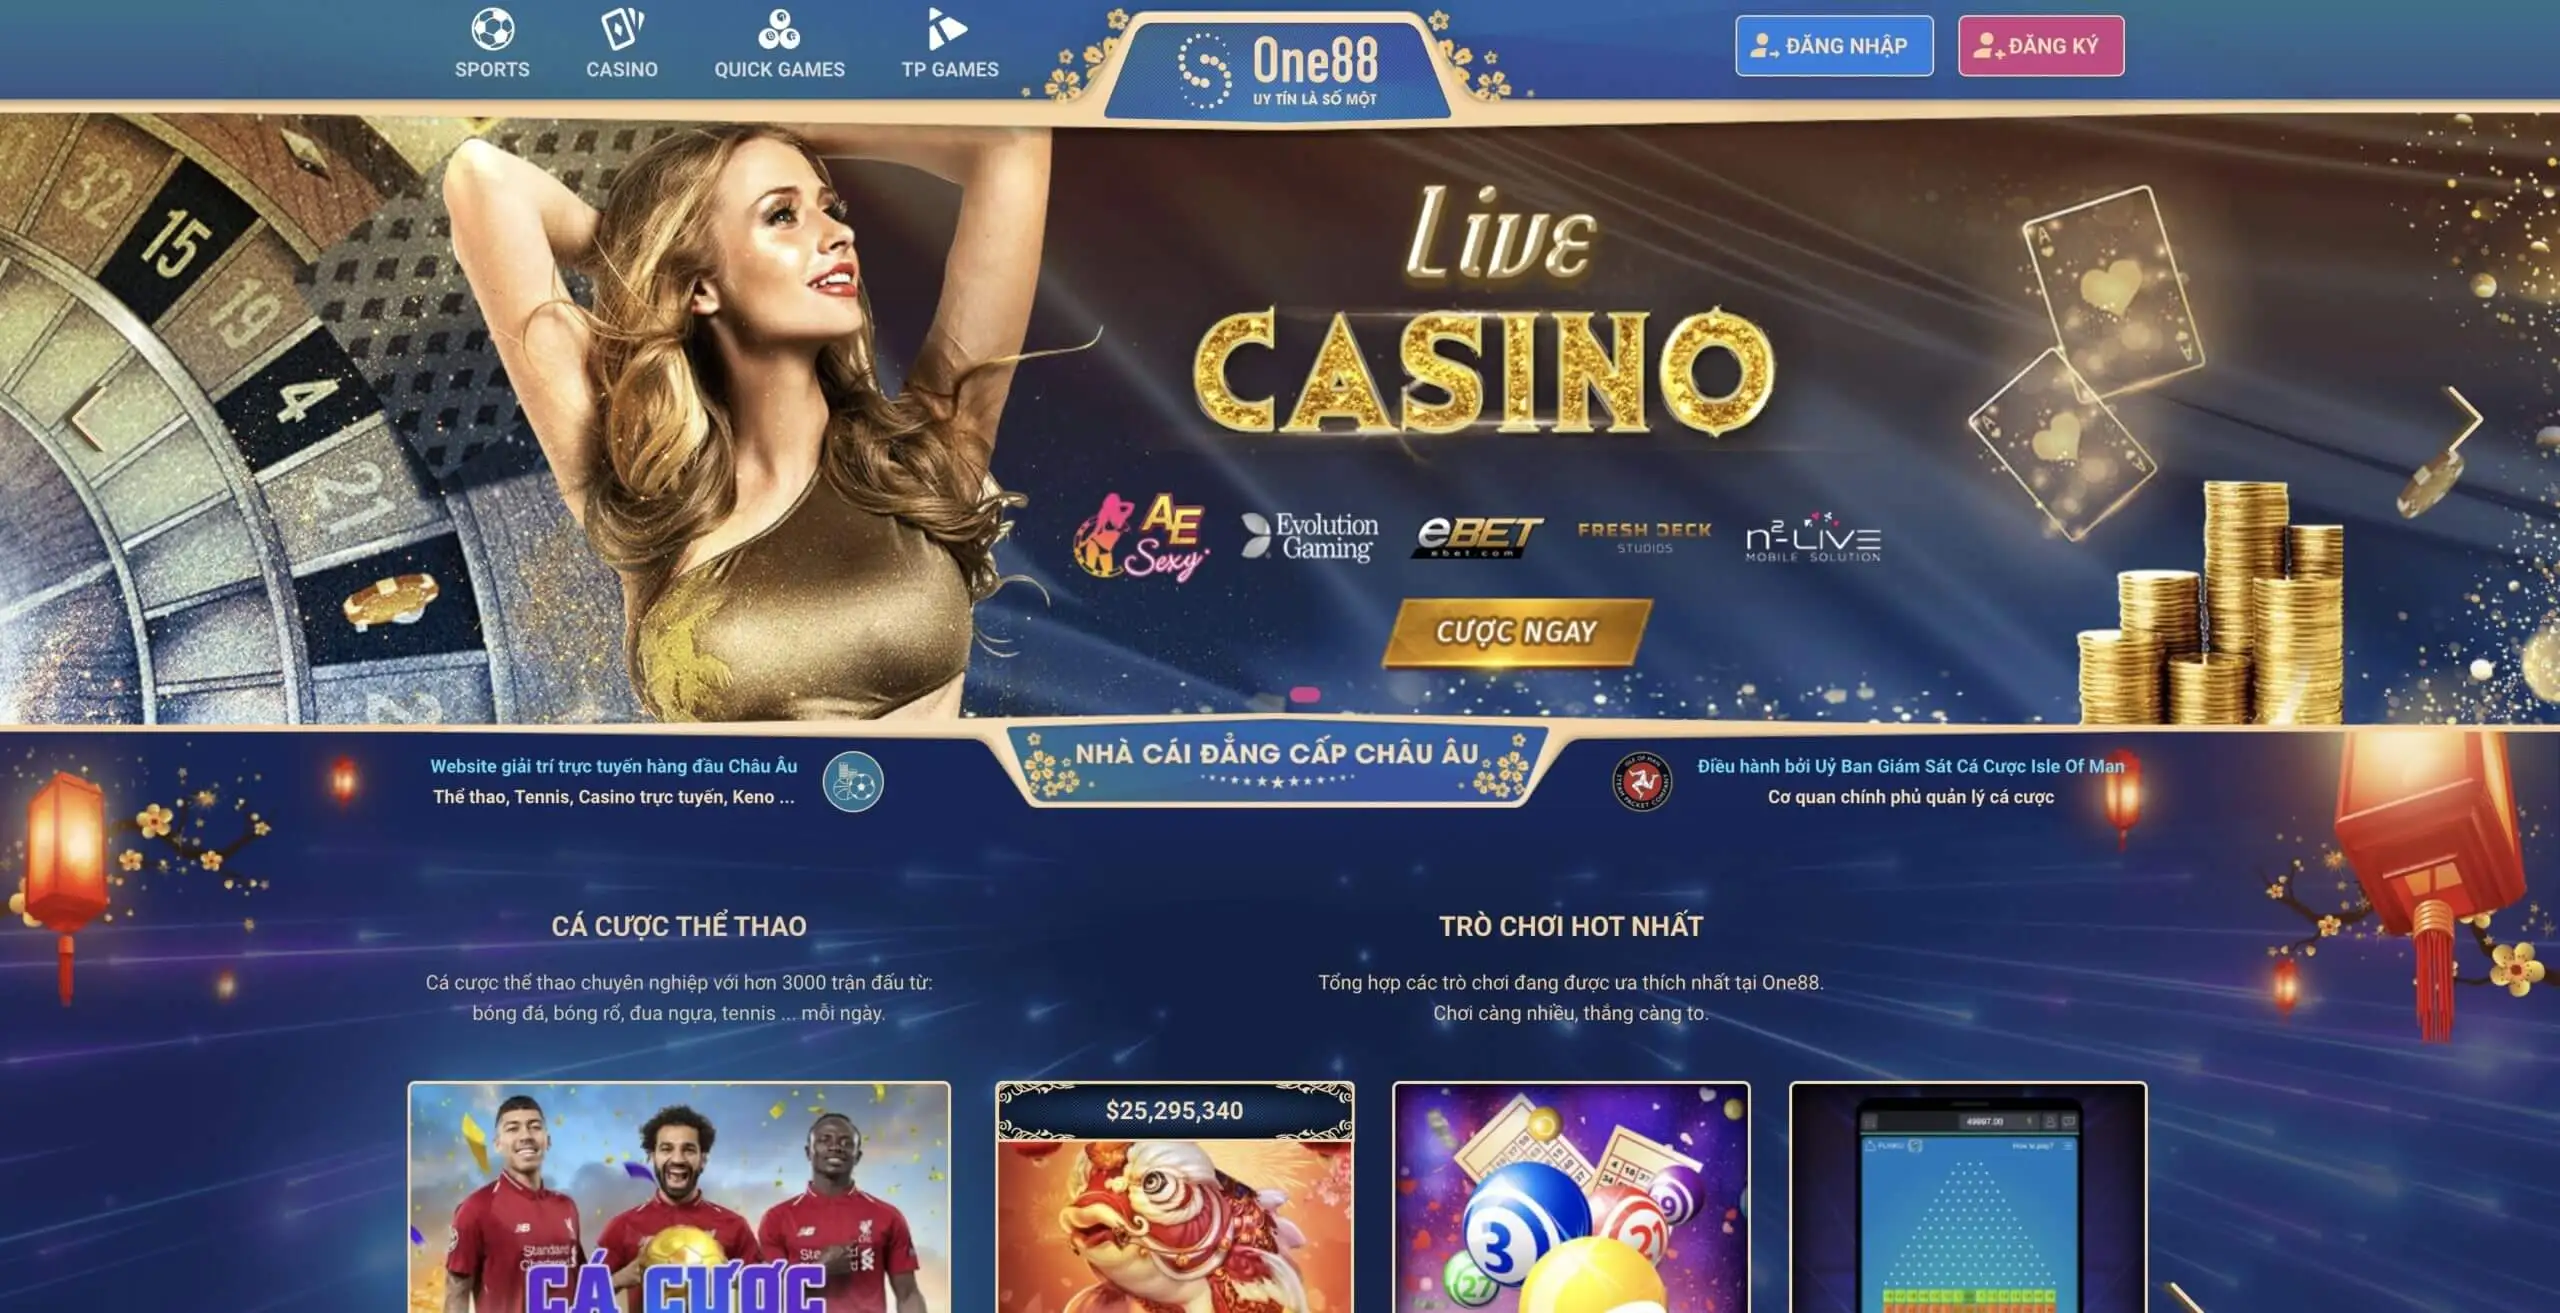 Những điều cần lưu ý khi chơi casino trực tuyến: Ưu điểm khi chơi casino trực tuyến